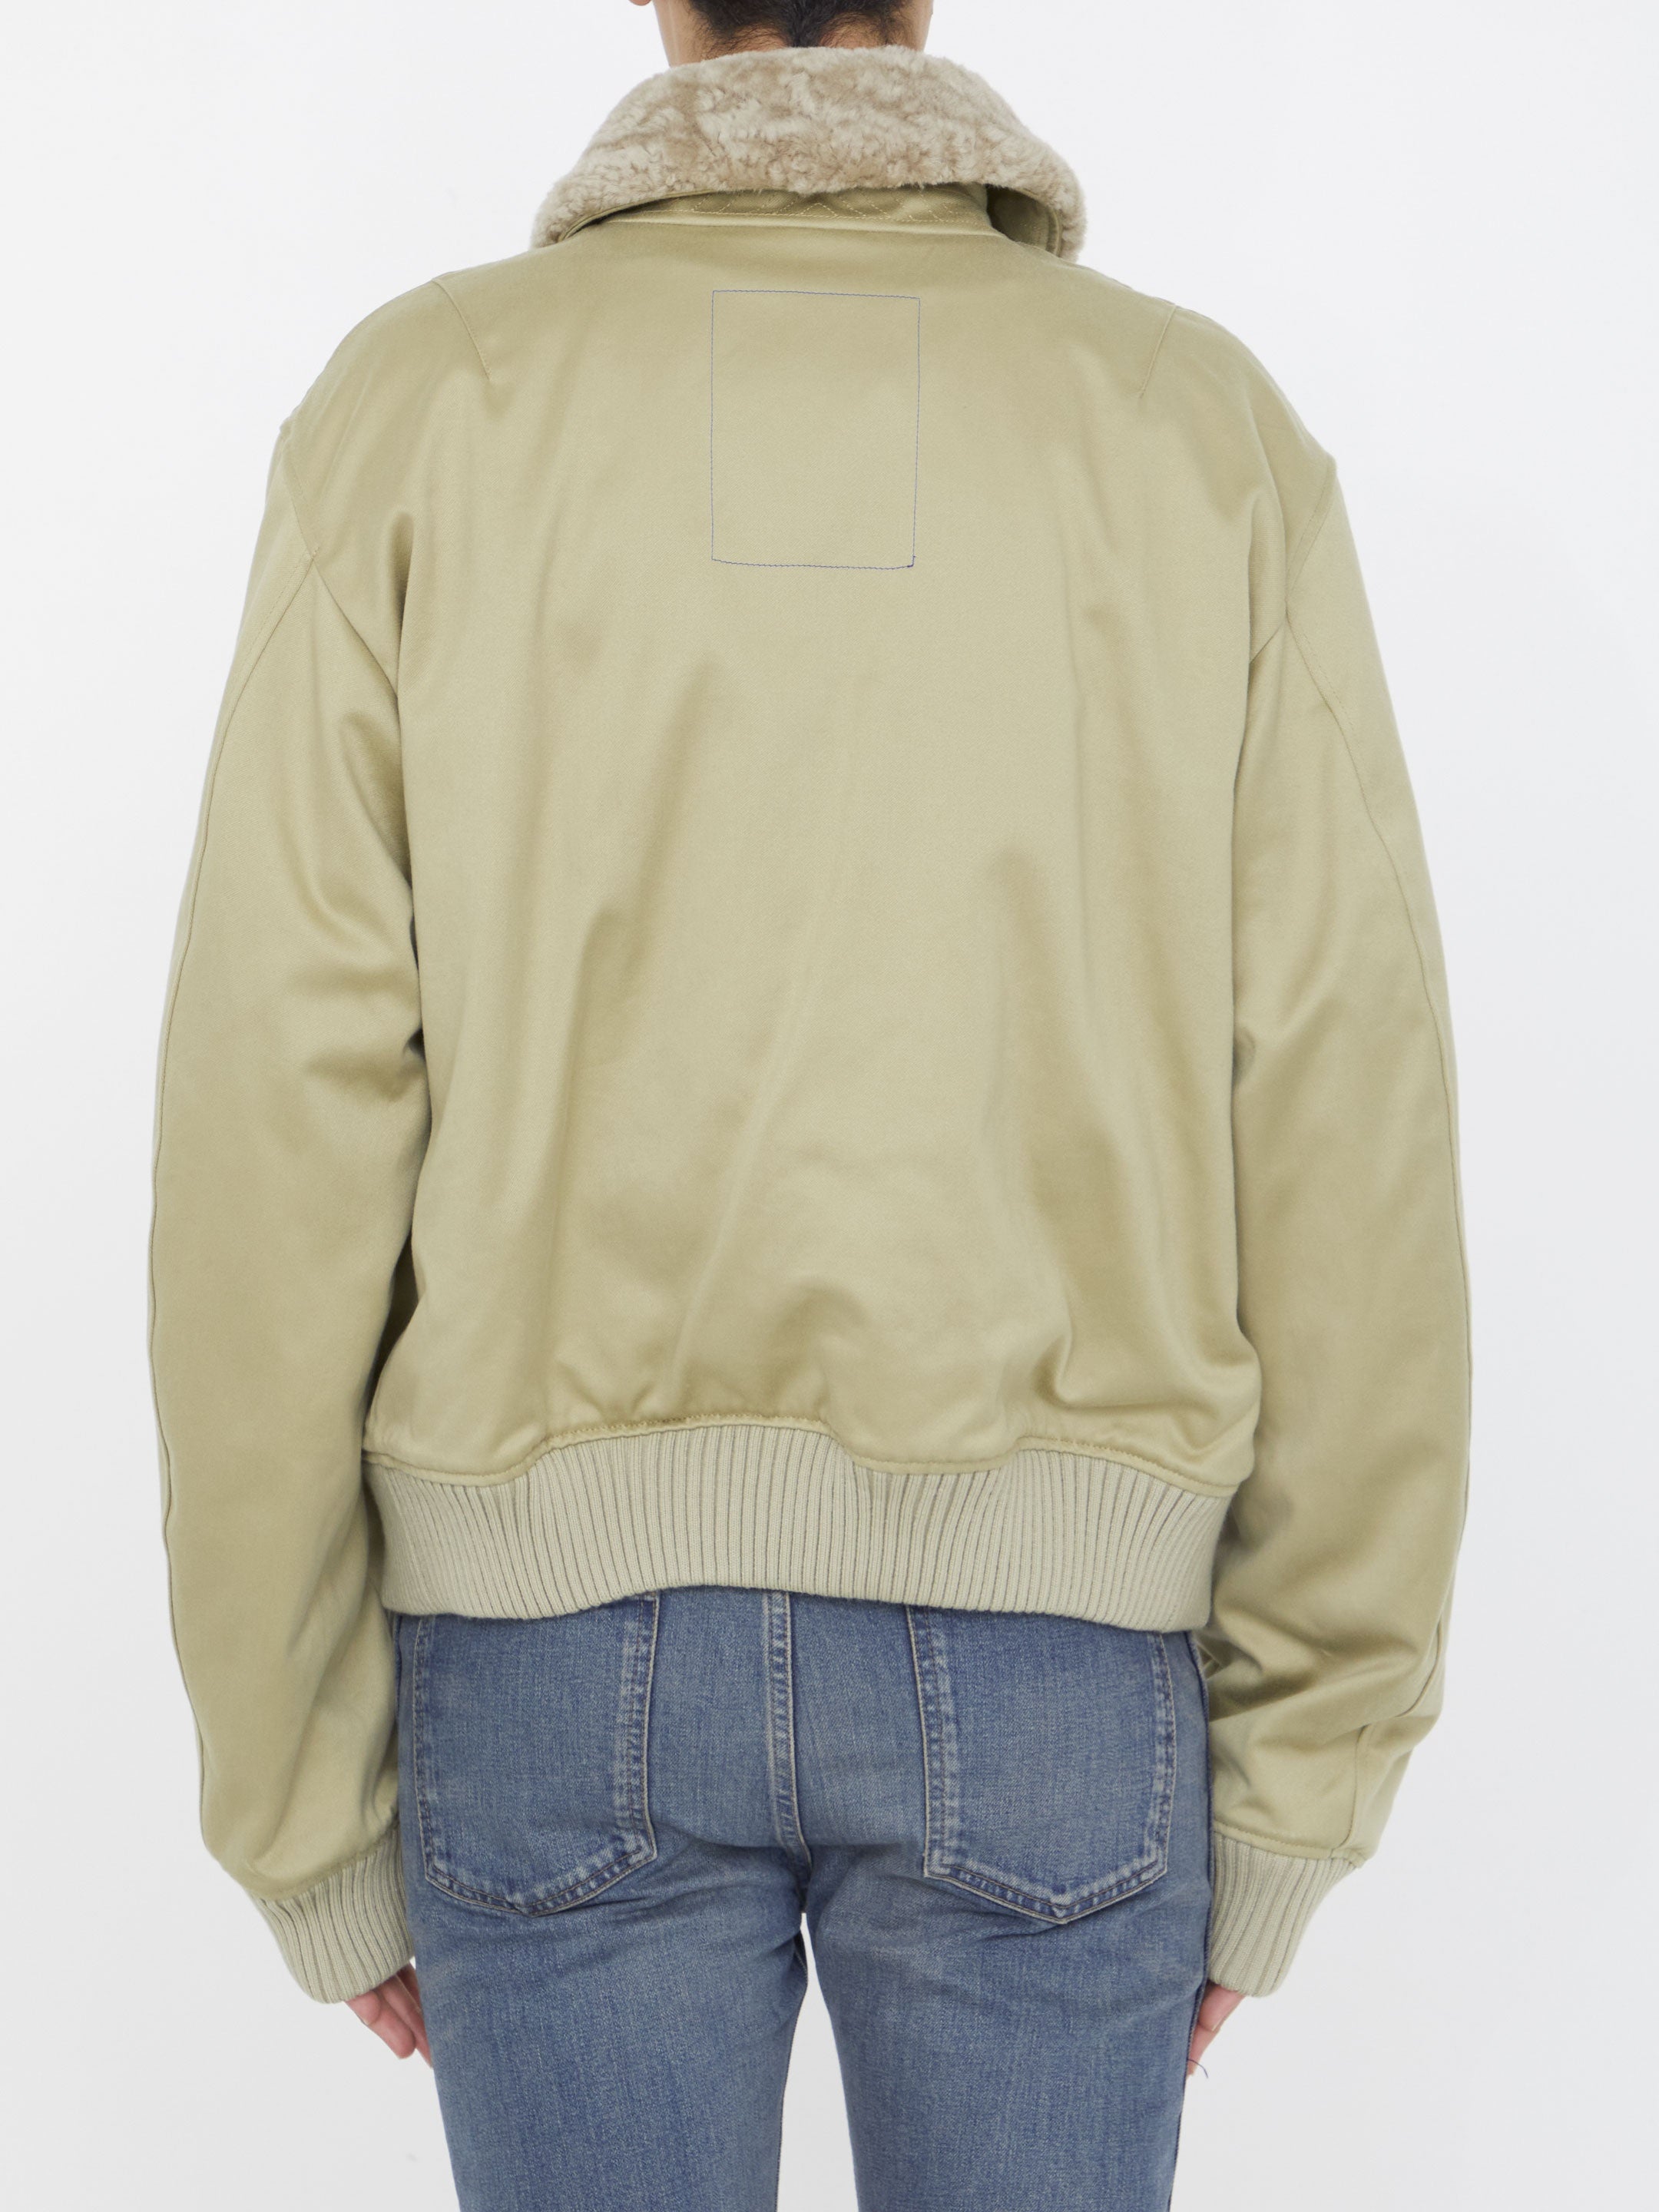 Cotton bomber jacket